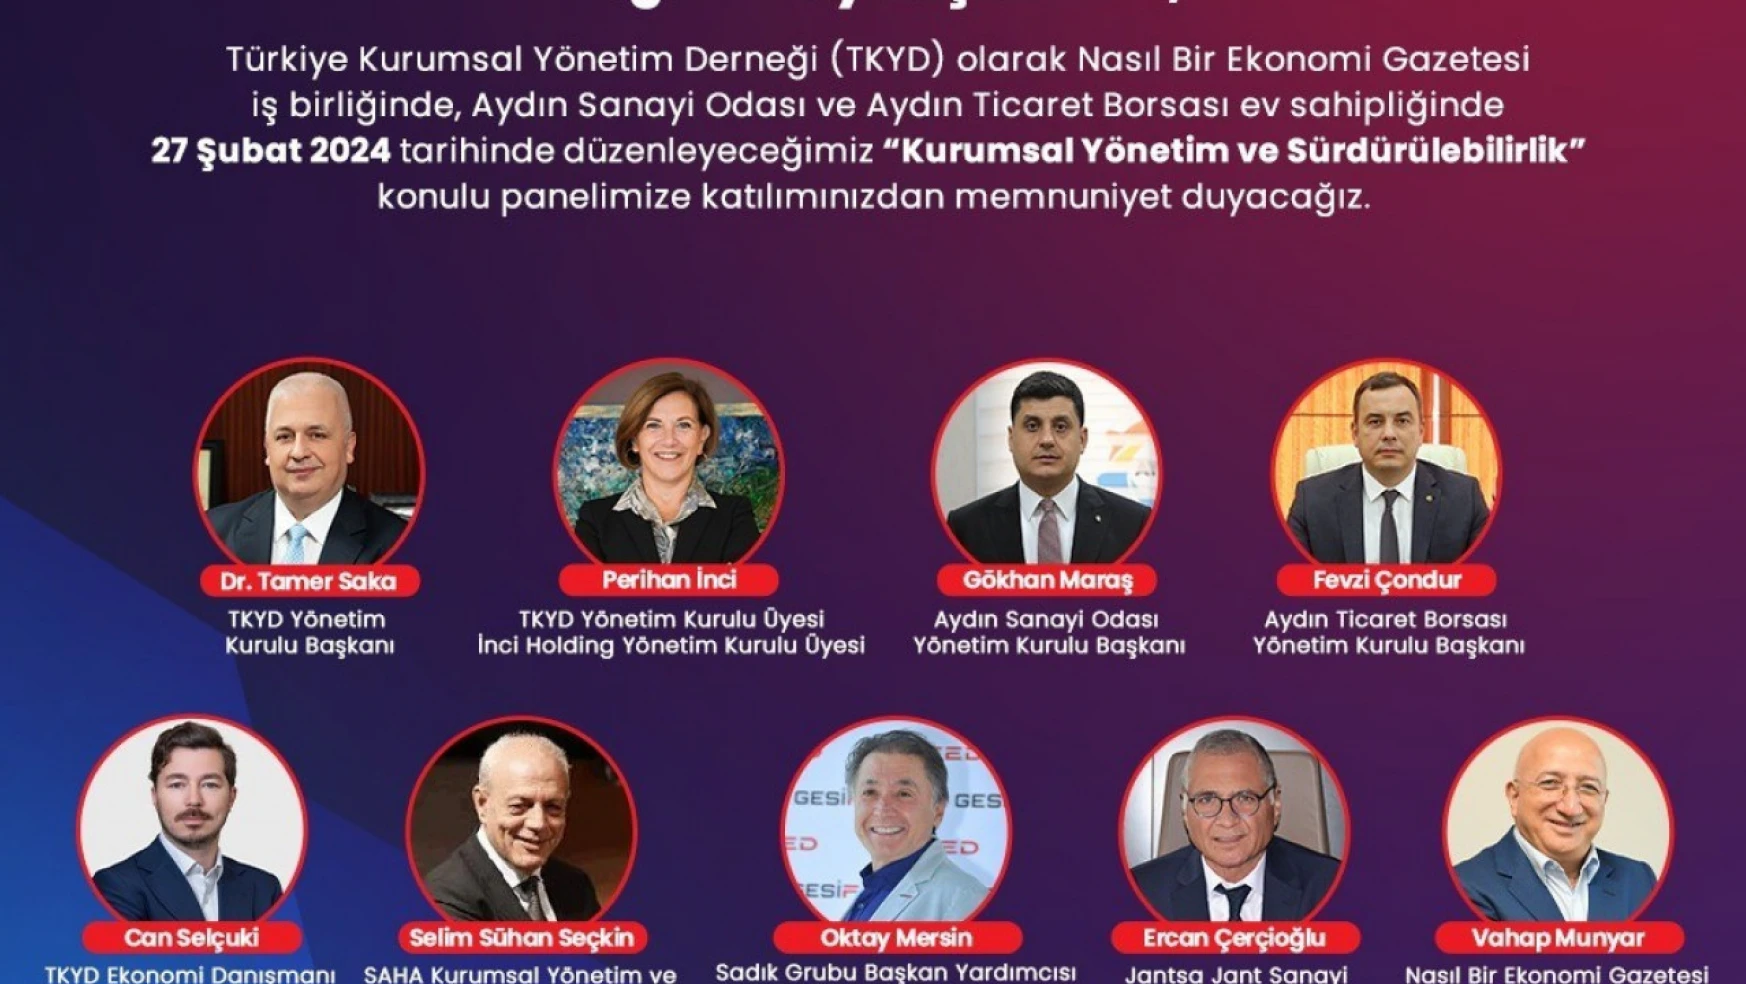 Aydın'da iş dünyası kurumsal yönetimi TKYD'den dinleyecek